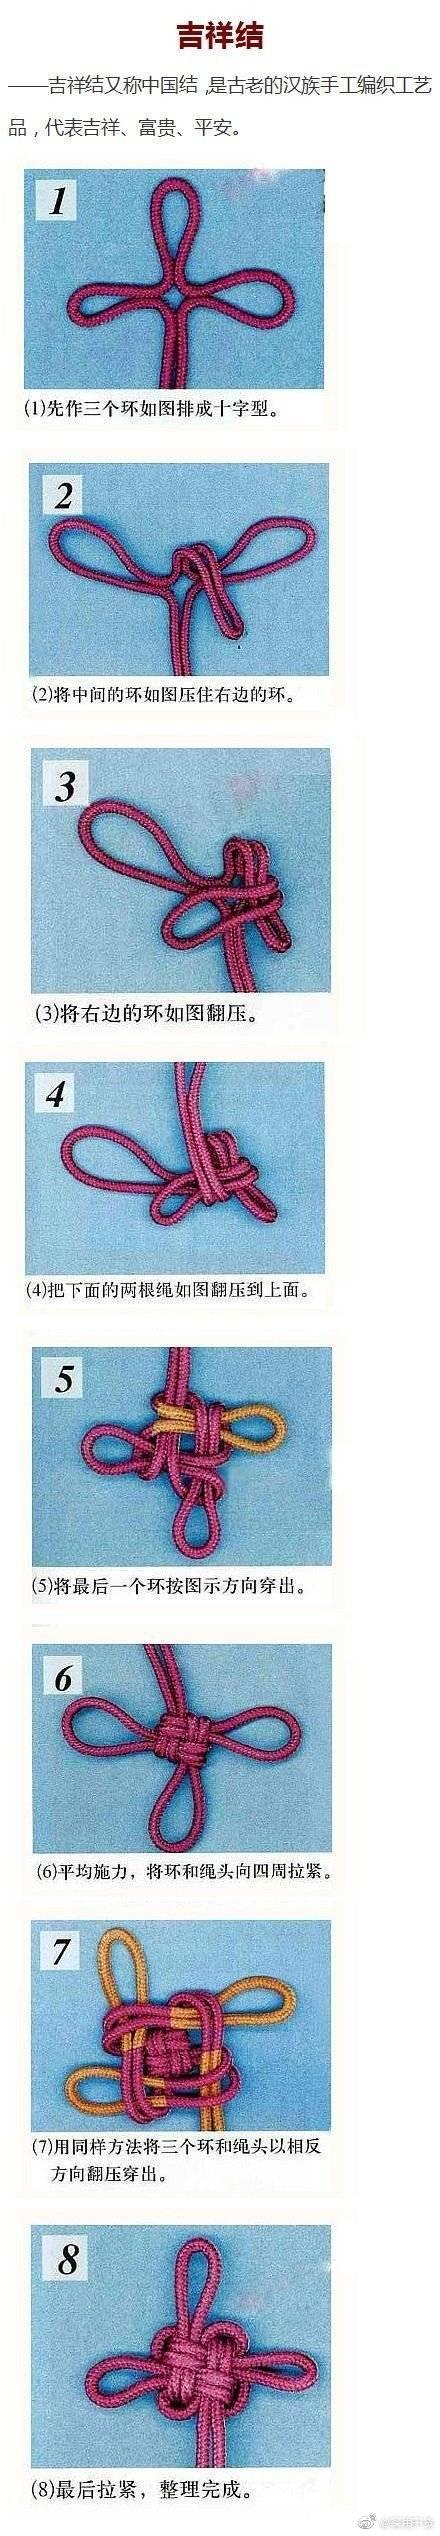 手把手教你9种中国结中的基本结式